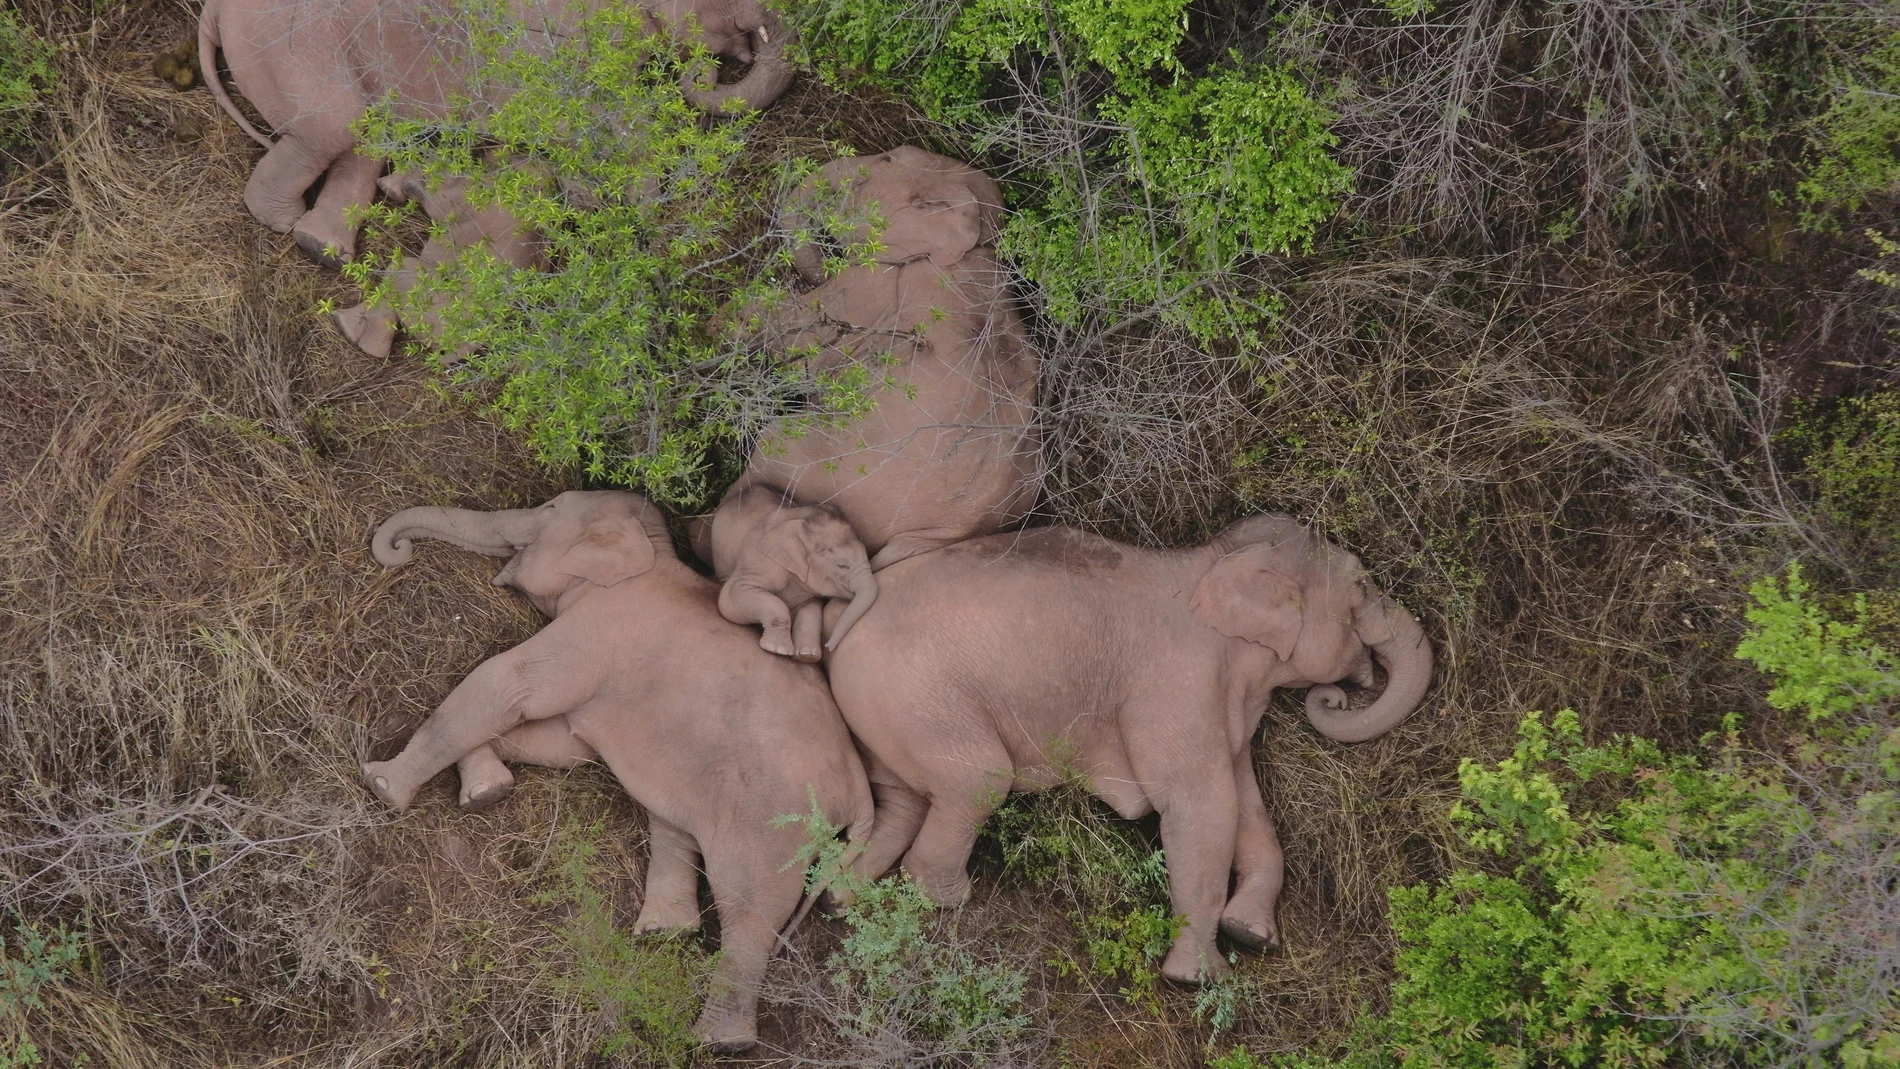 La familia de elefantes descansa en el claro de un bosque en Jinning (China) después de 500 kilómetros de travesía durante el último año